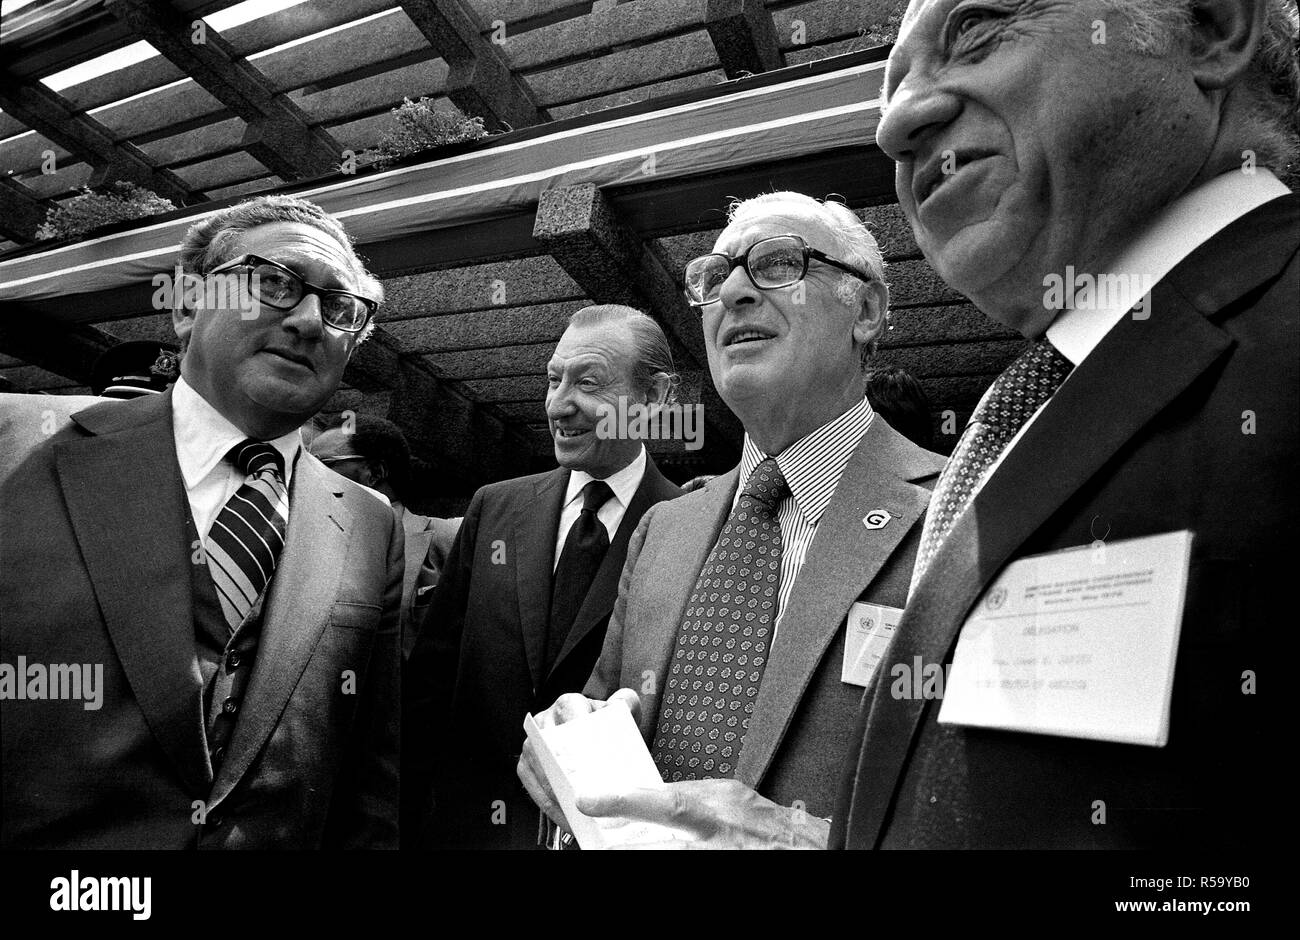 1976, Mai 5 - UNCTAD Website - Nairobi, Kenia (Afrika) - Henry Kissinger, Kurt Waldheim, Senatoren Jacob Javits & Abraham Ribicoff stehende zusammen außerhalb von Gebäude - Staatssekretär Reise nach Africa-United Nationen für die zur Konferenz der Vereinten Nationen für Handel und Entwicklung (UNCTAD IV IV) - Abfahrt; UN-Generalsekretär Waldheim; US-Senatoren aus New York (NY-javits) und Connecticut (CT-Ribicoff) Stockfoto